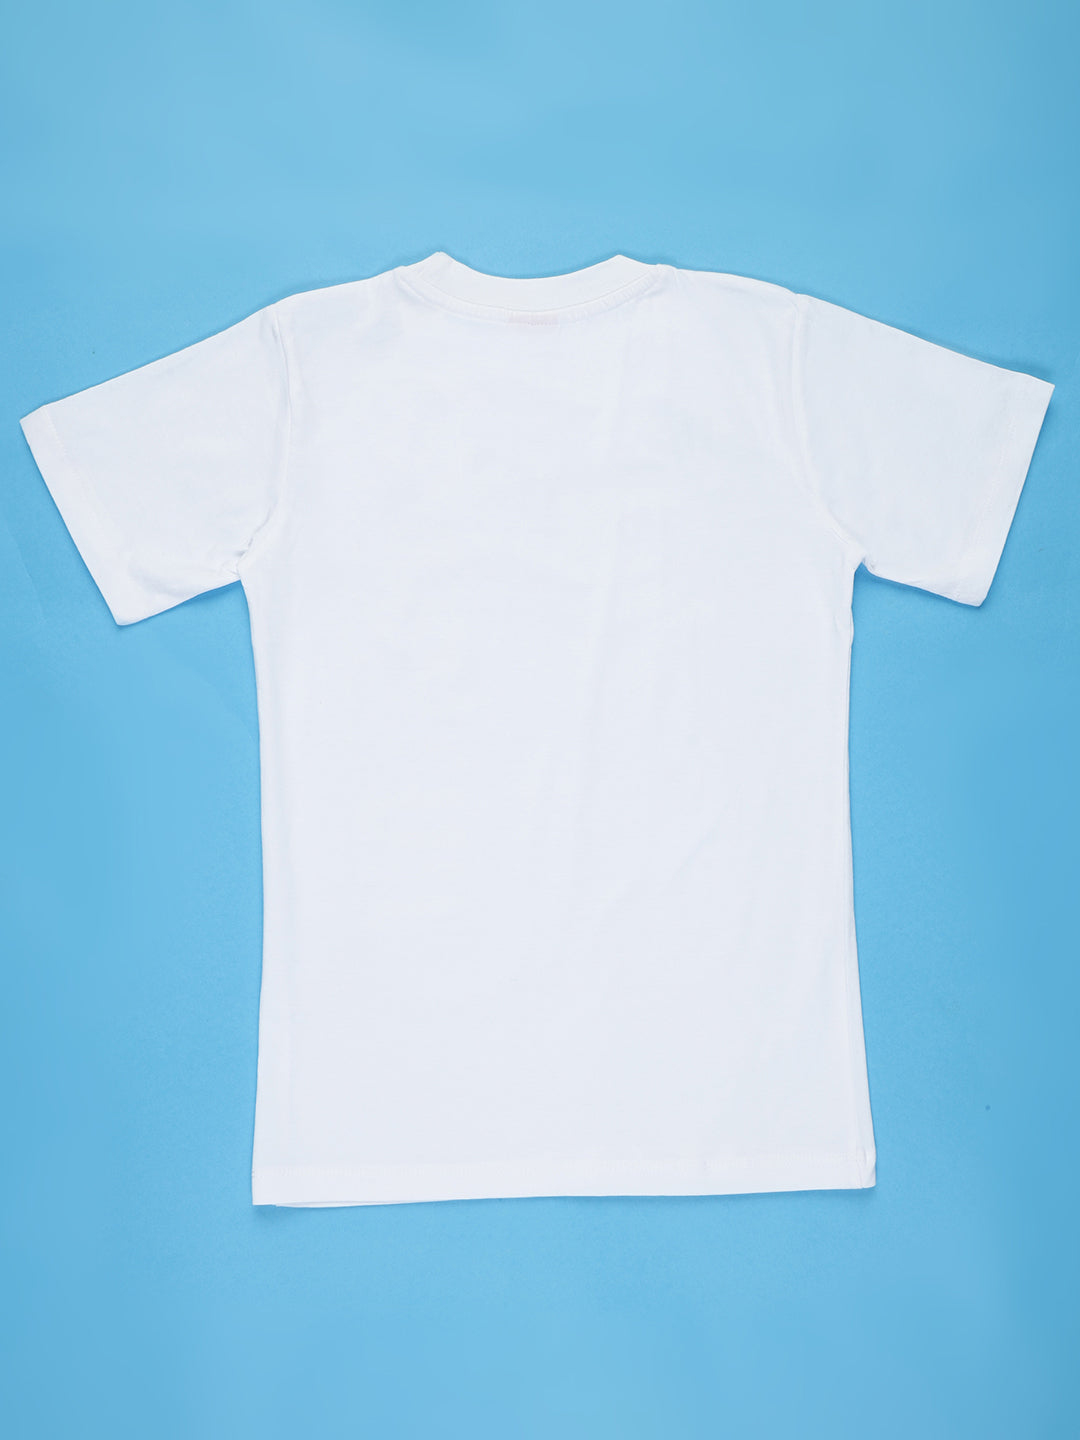 Jiujitsu T-shirts for Boys & Girls